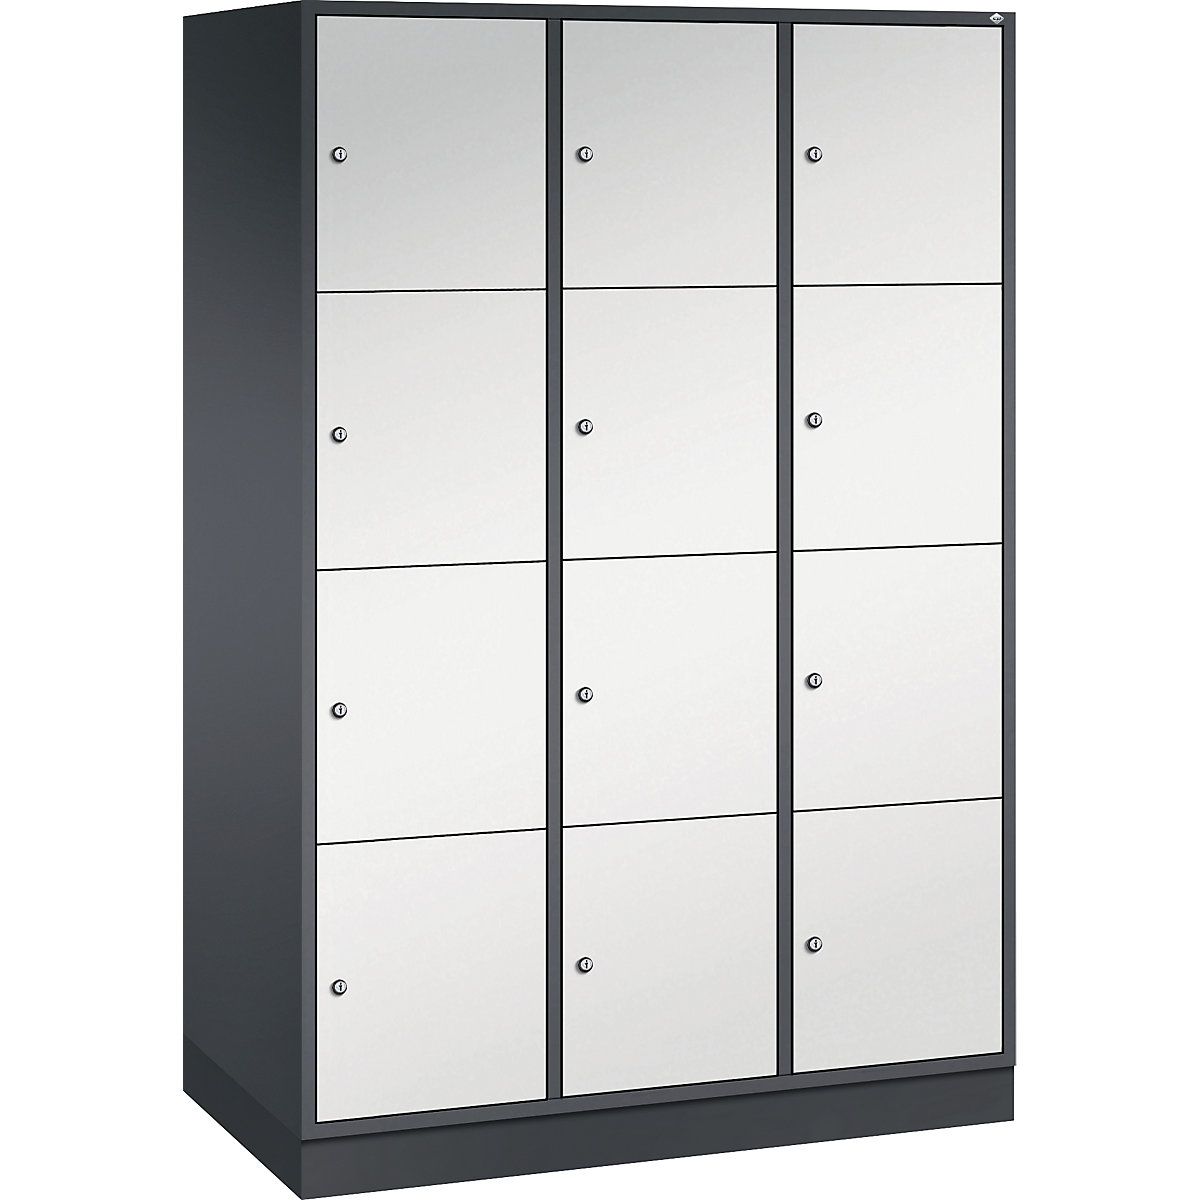 Vestiaire multicases en acier INTRO, casiers hauteur 435 mm – C+P, l x p 1220 x 600 mm, 12 casiers, corps gris noir, portes gris clair-10